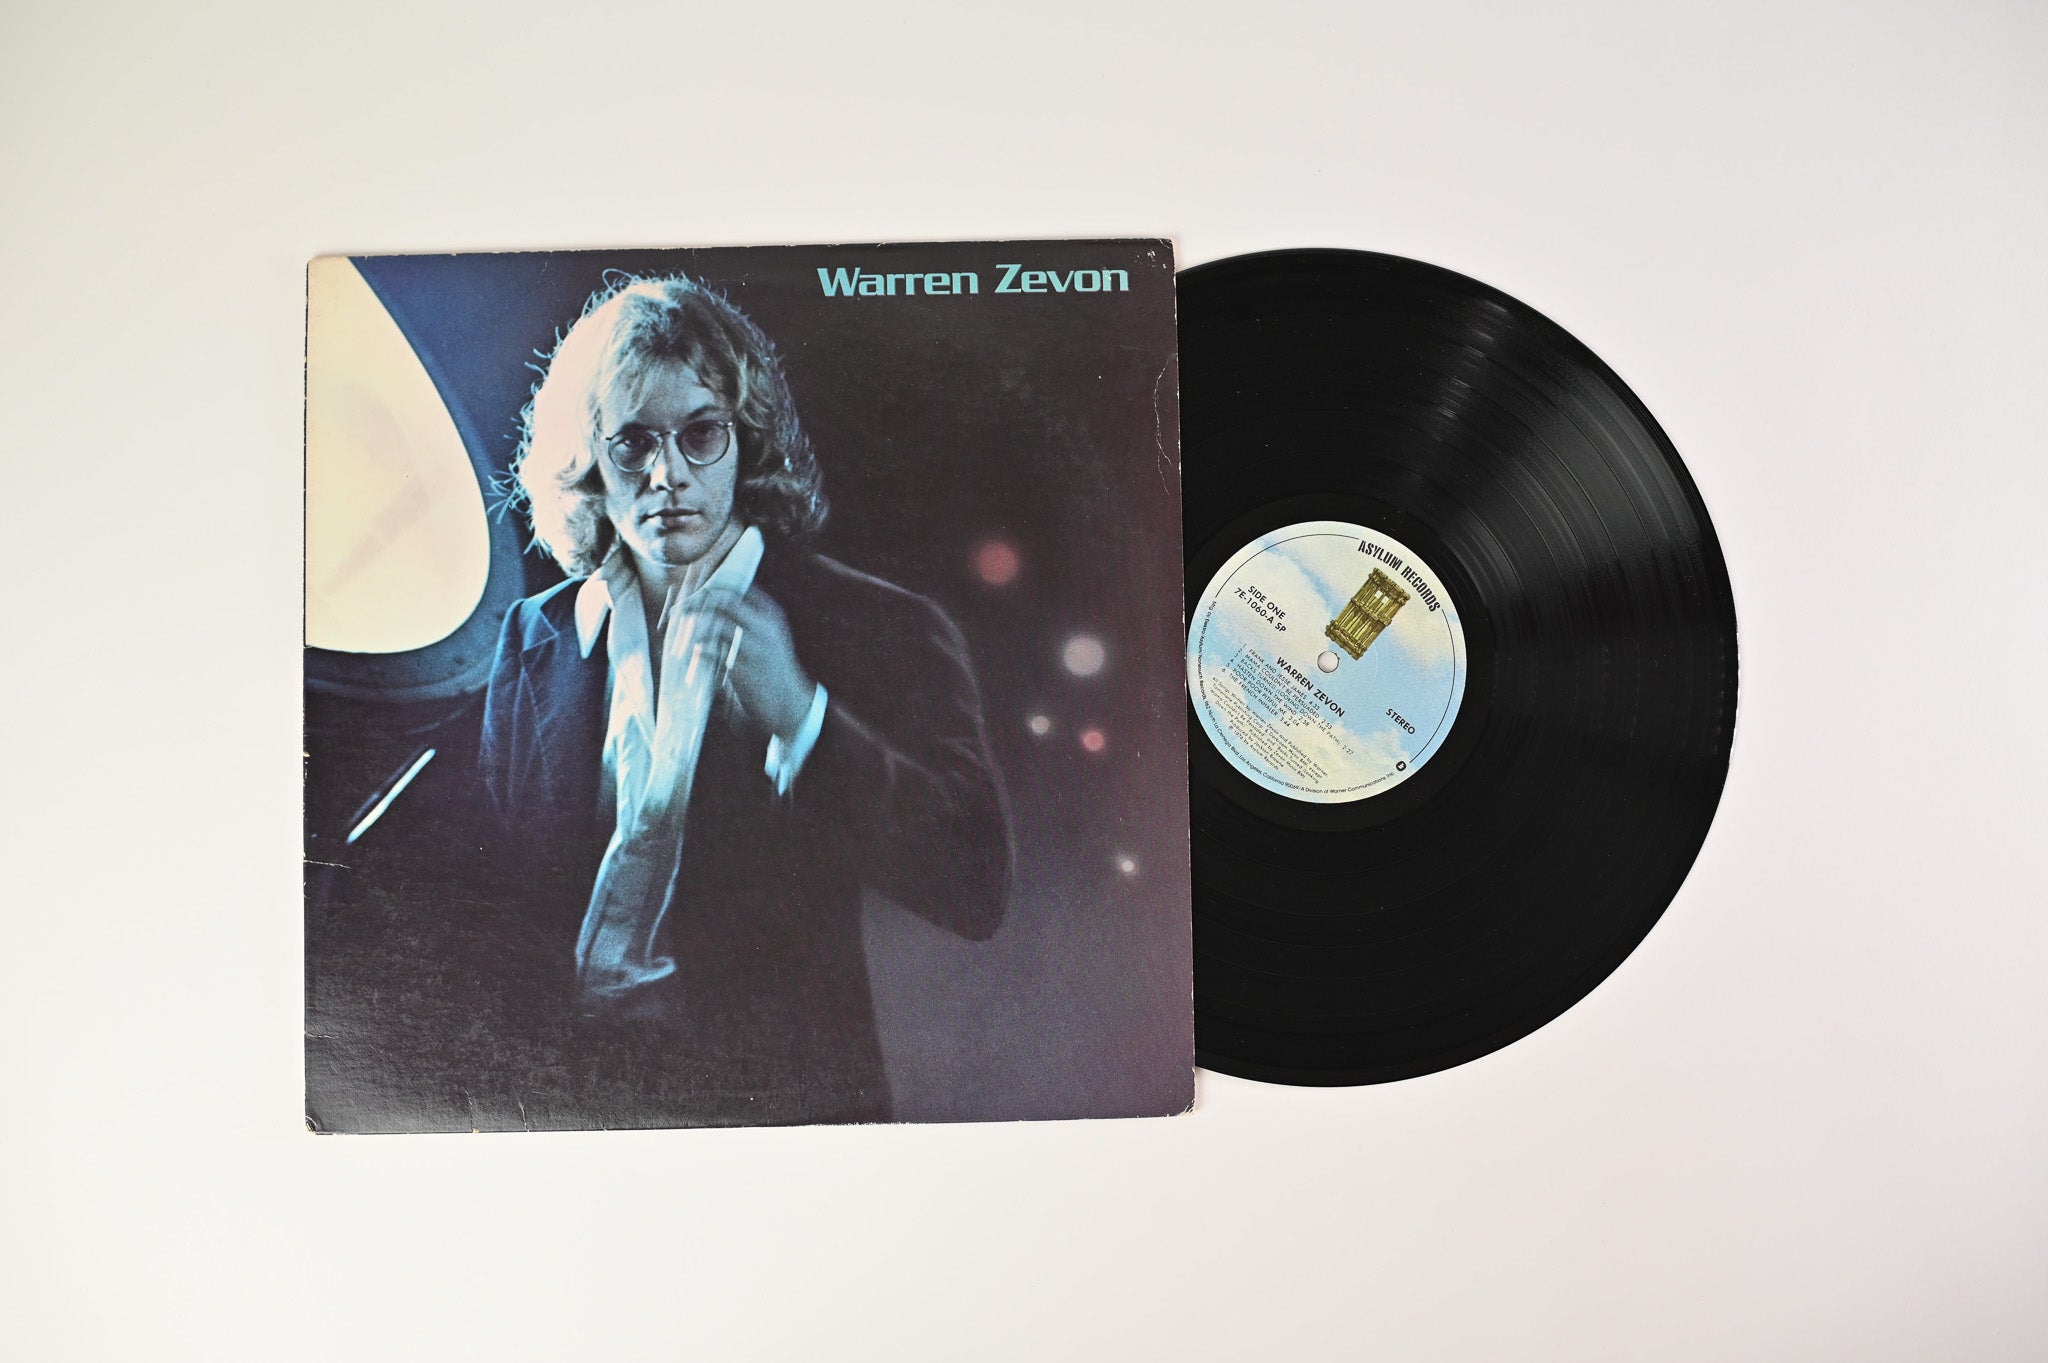 Warren Zevon - Warren Zevon on Asylum Records